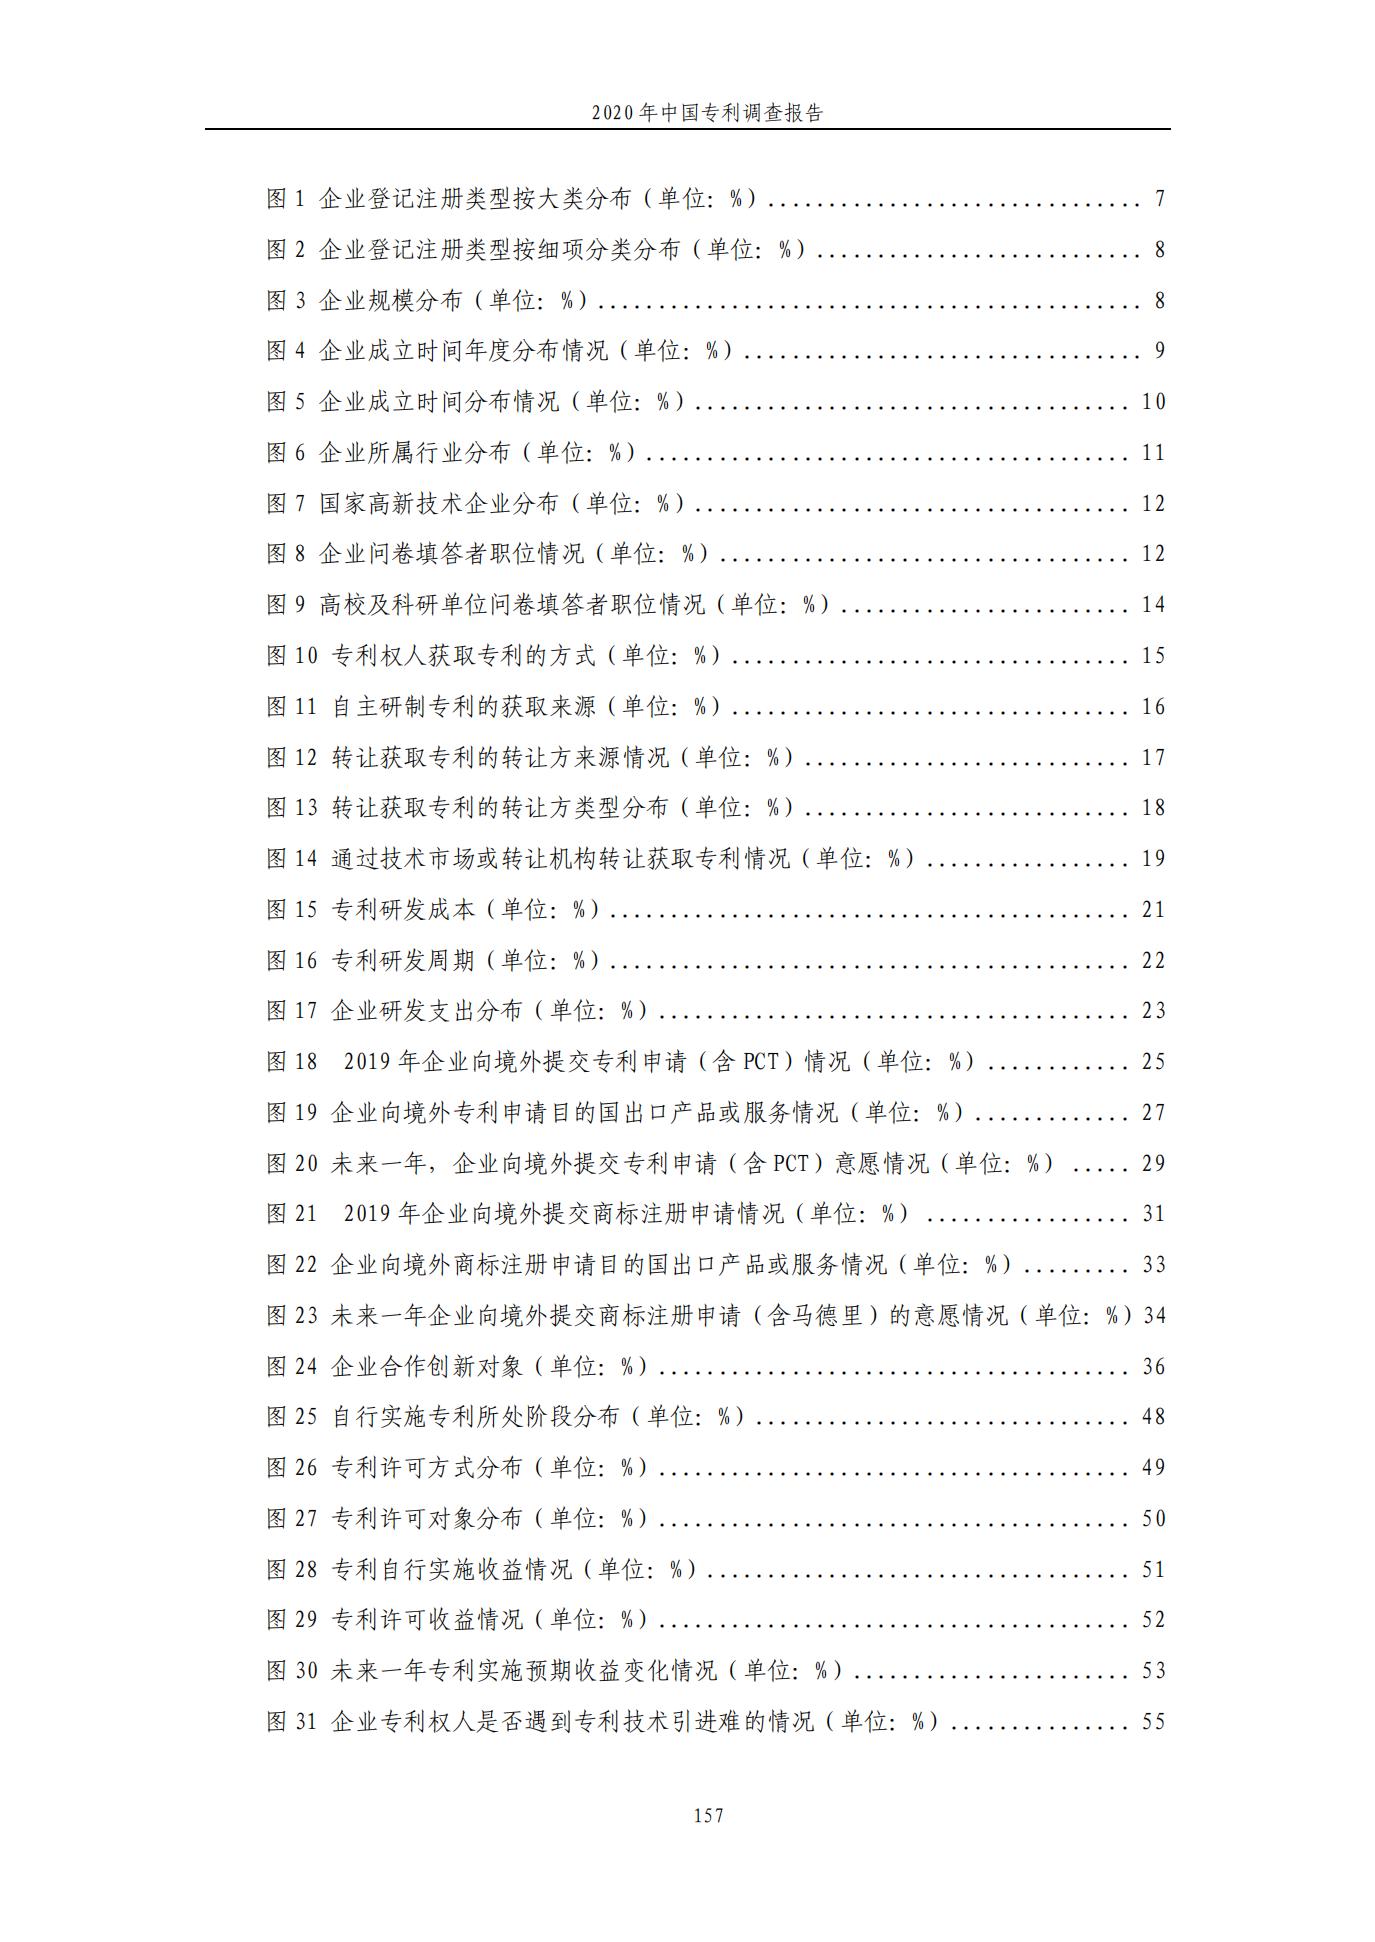 《2020年中国专利调查报告》全文发布